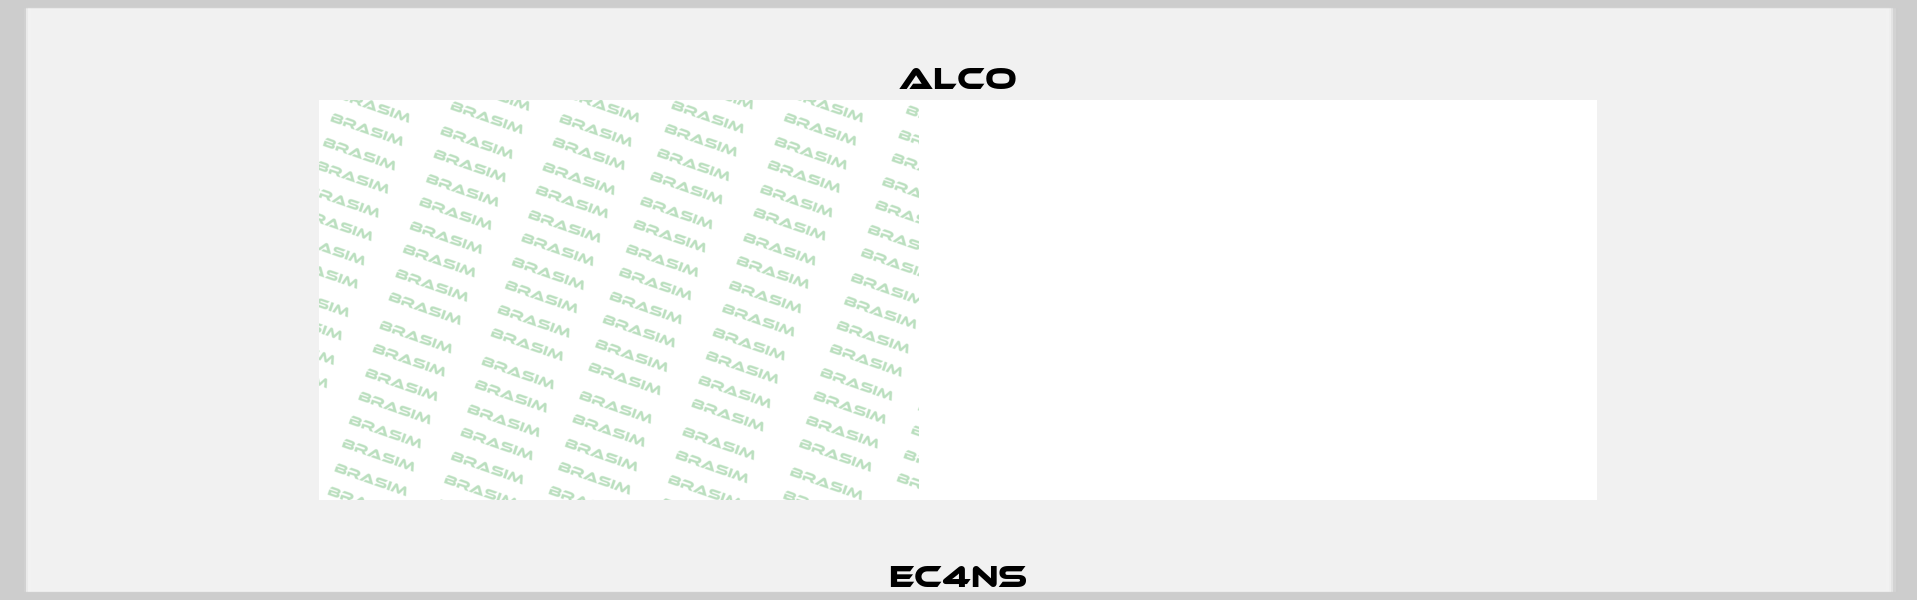 EC4NS Alco